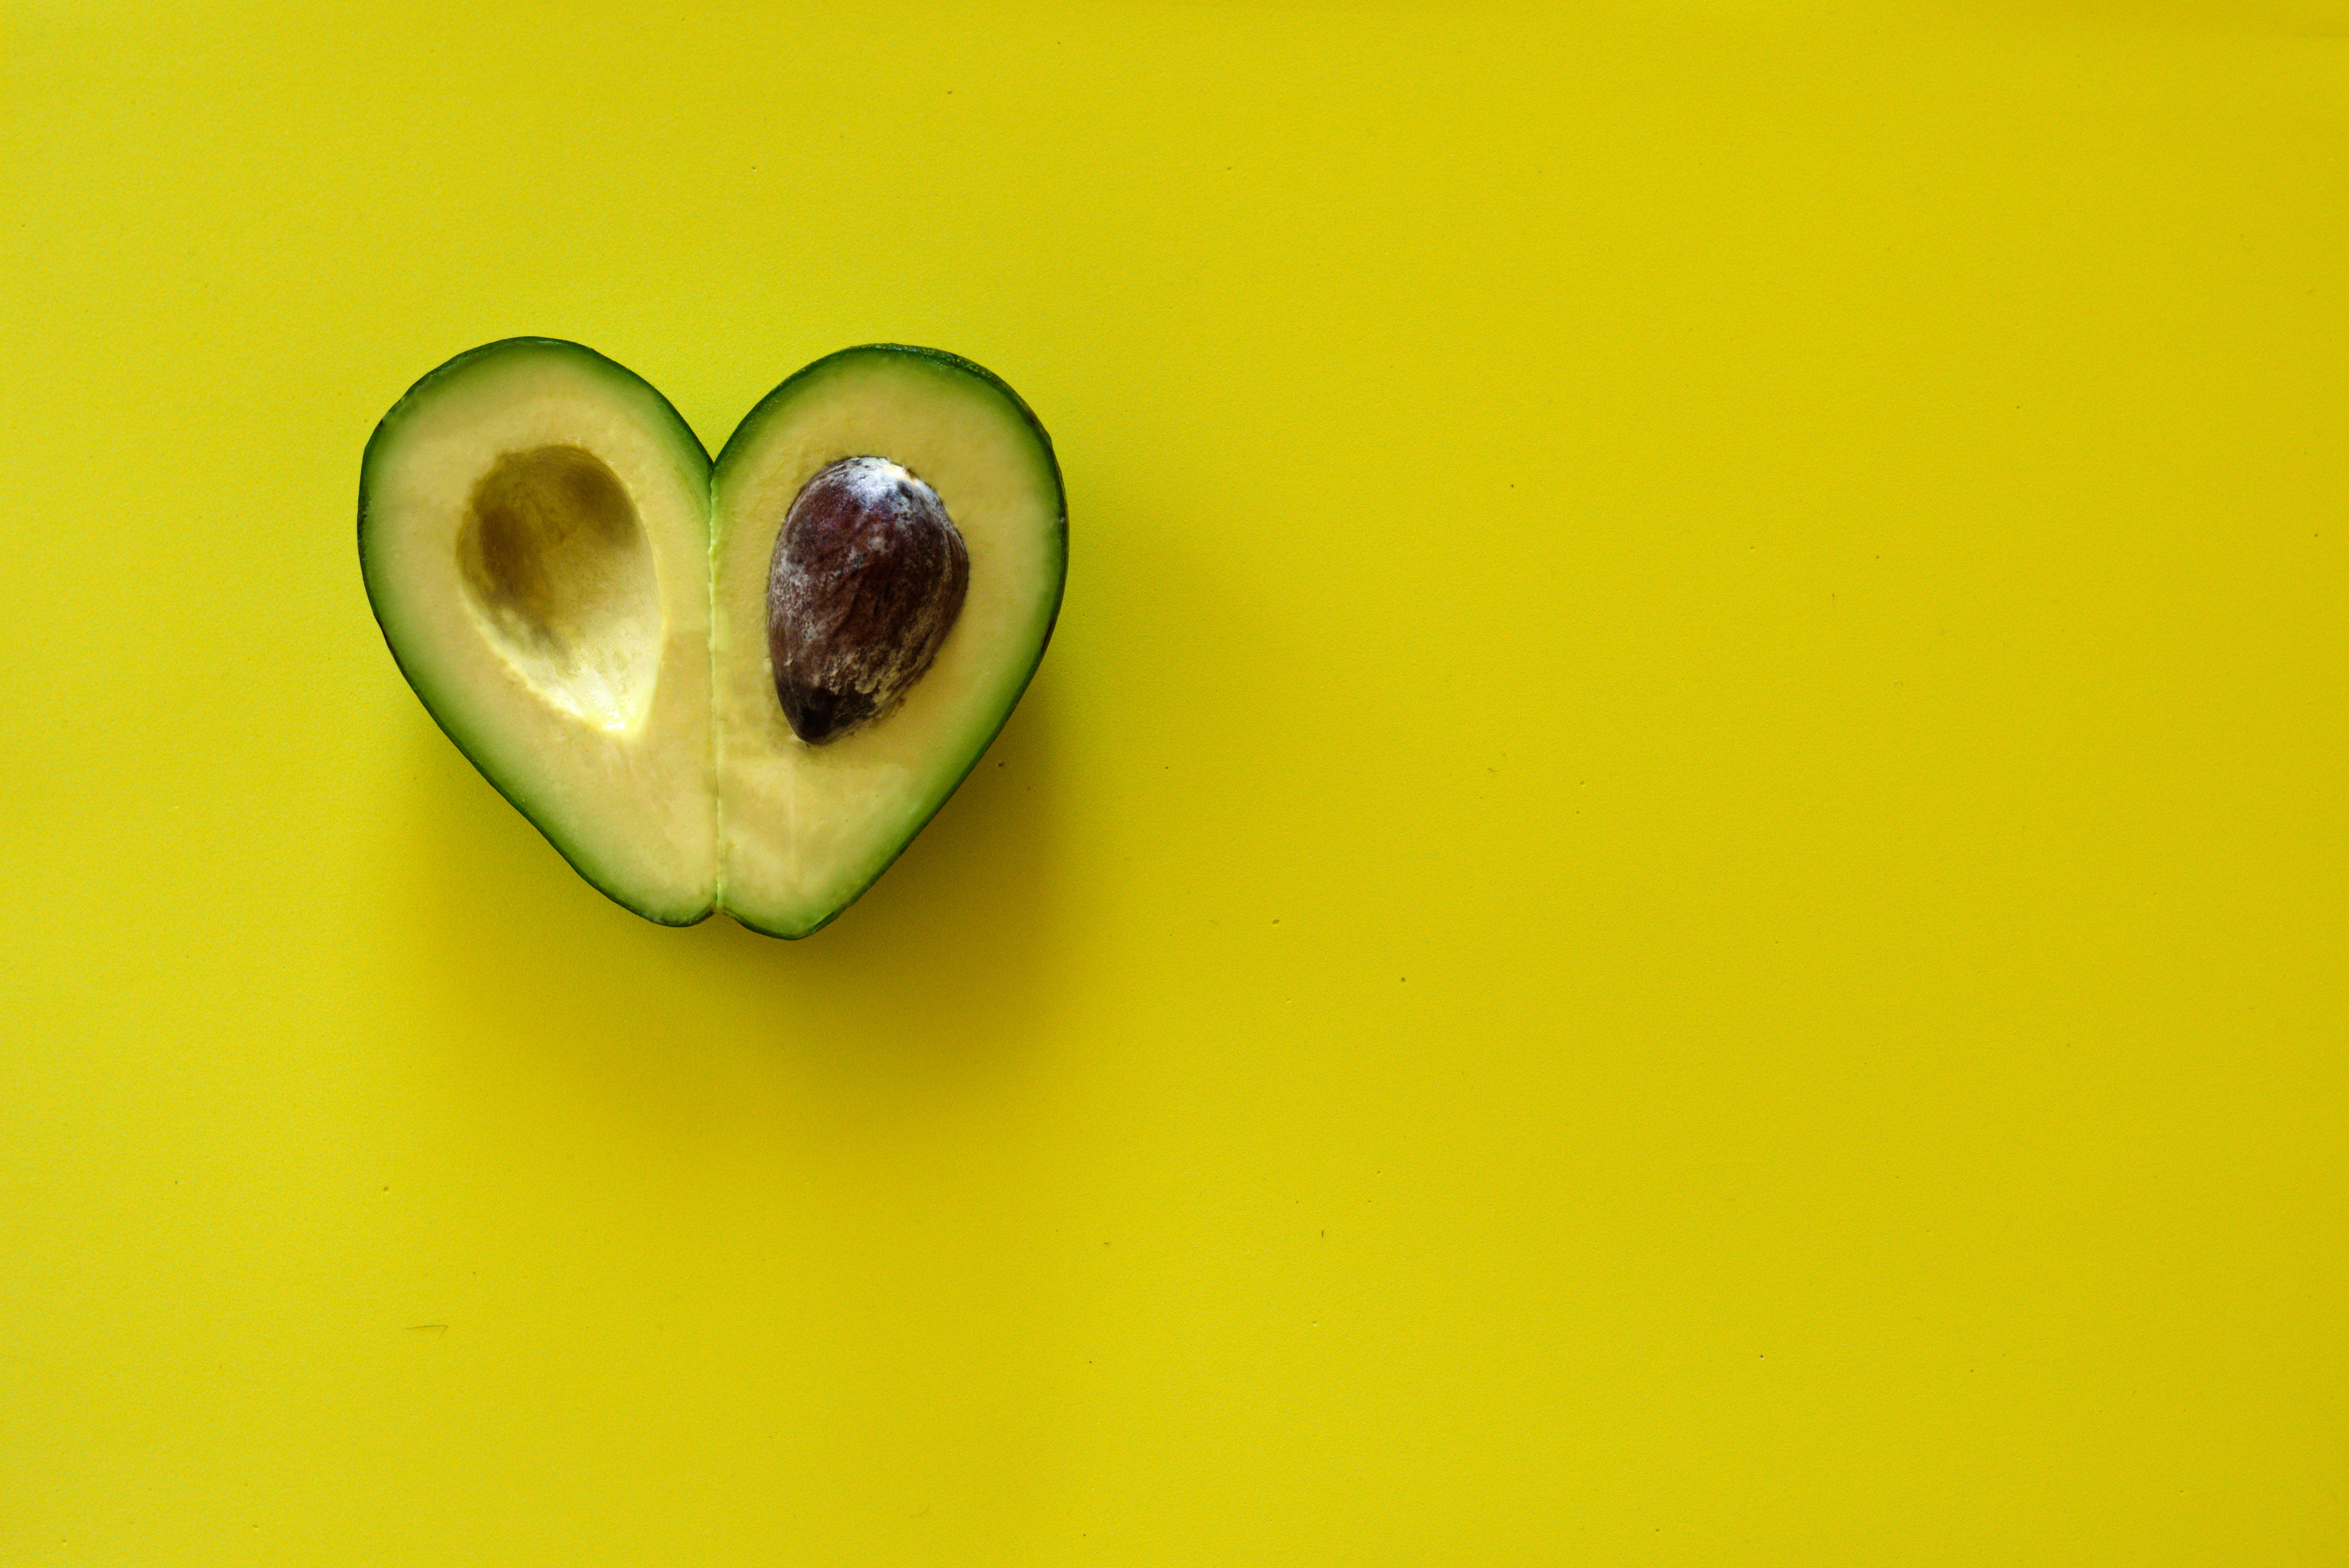 heart-shaped-avocado